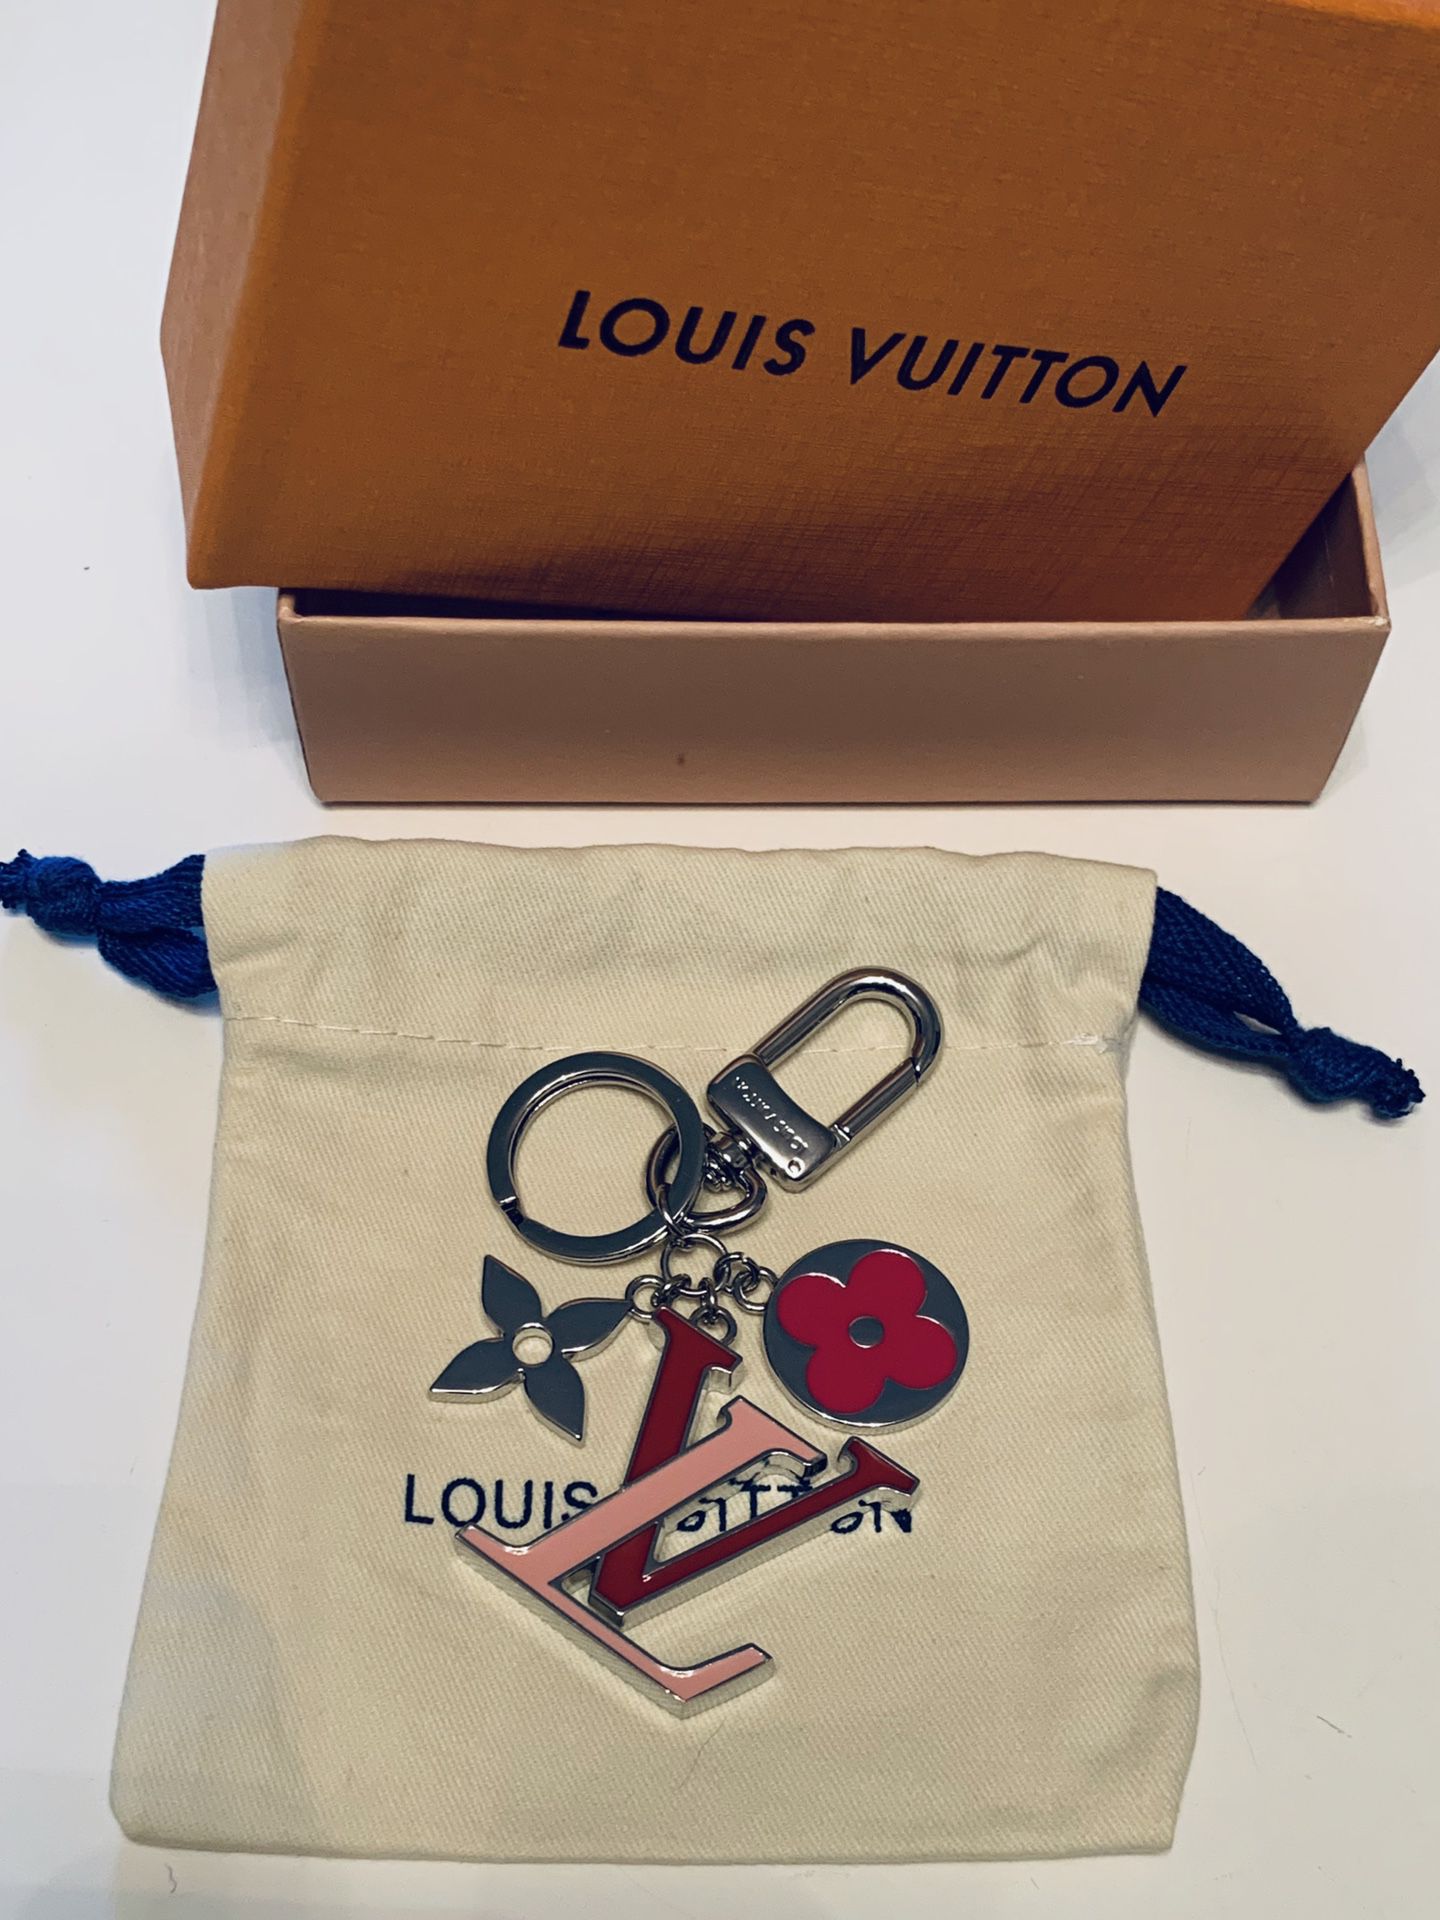 Louis Vuitton key chain bag chain